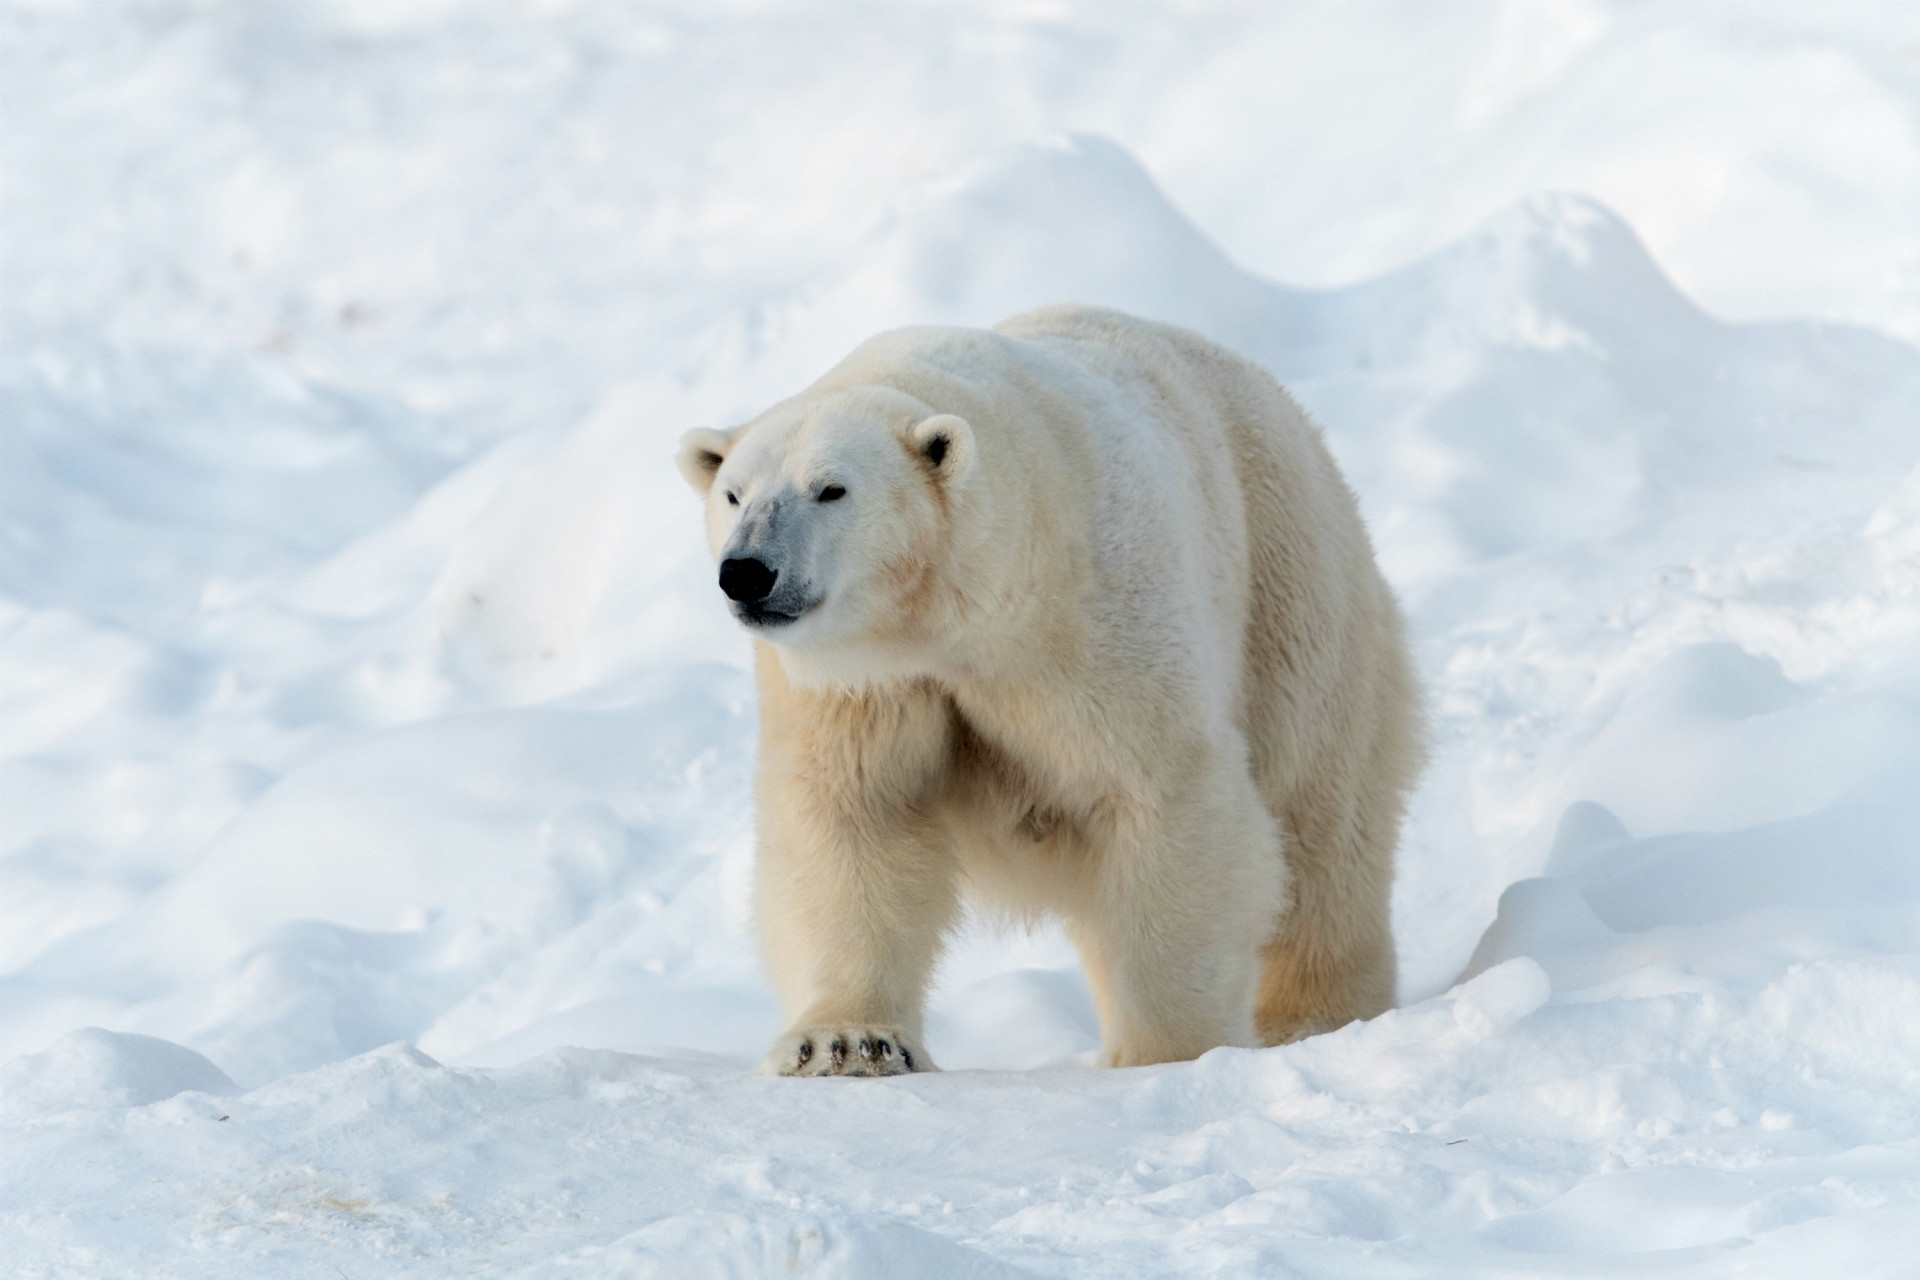 Également connu sous le nom de zoo de Ranua, ce désert montagneux situé dans l'Arctique sauvage abrite des ours polaires et 50 autres espèces animales.<p>Tu pourrais aussi aimer:<a href="https://www.starsinsider.com/n/450830?utm_source=msn.com&utm_medium=display&utm_campaign=referral_description&utm_content=309275v3"> Les fausses excuses pour ne pas faire de thérapie</a></p>